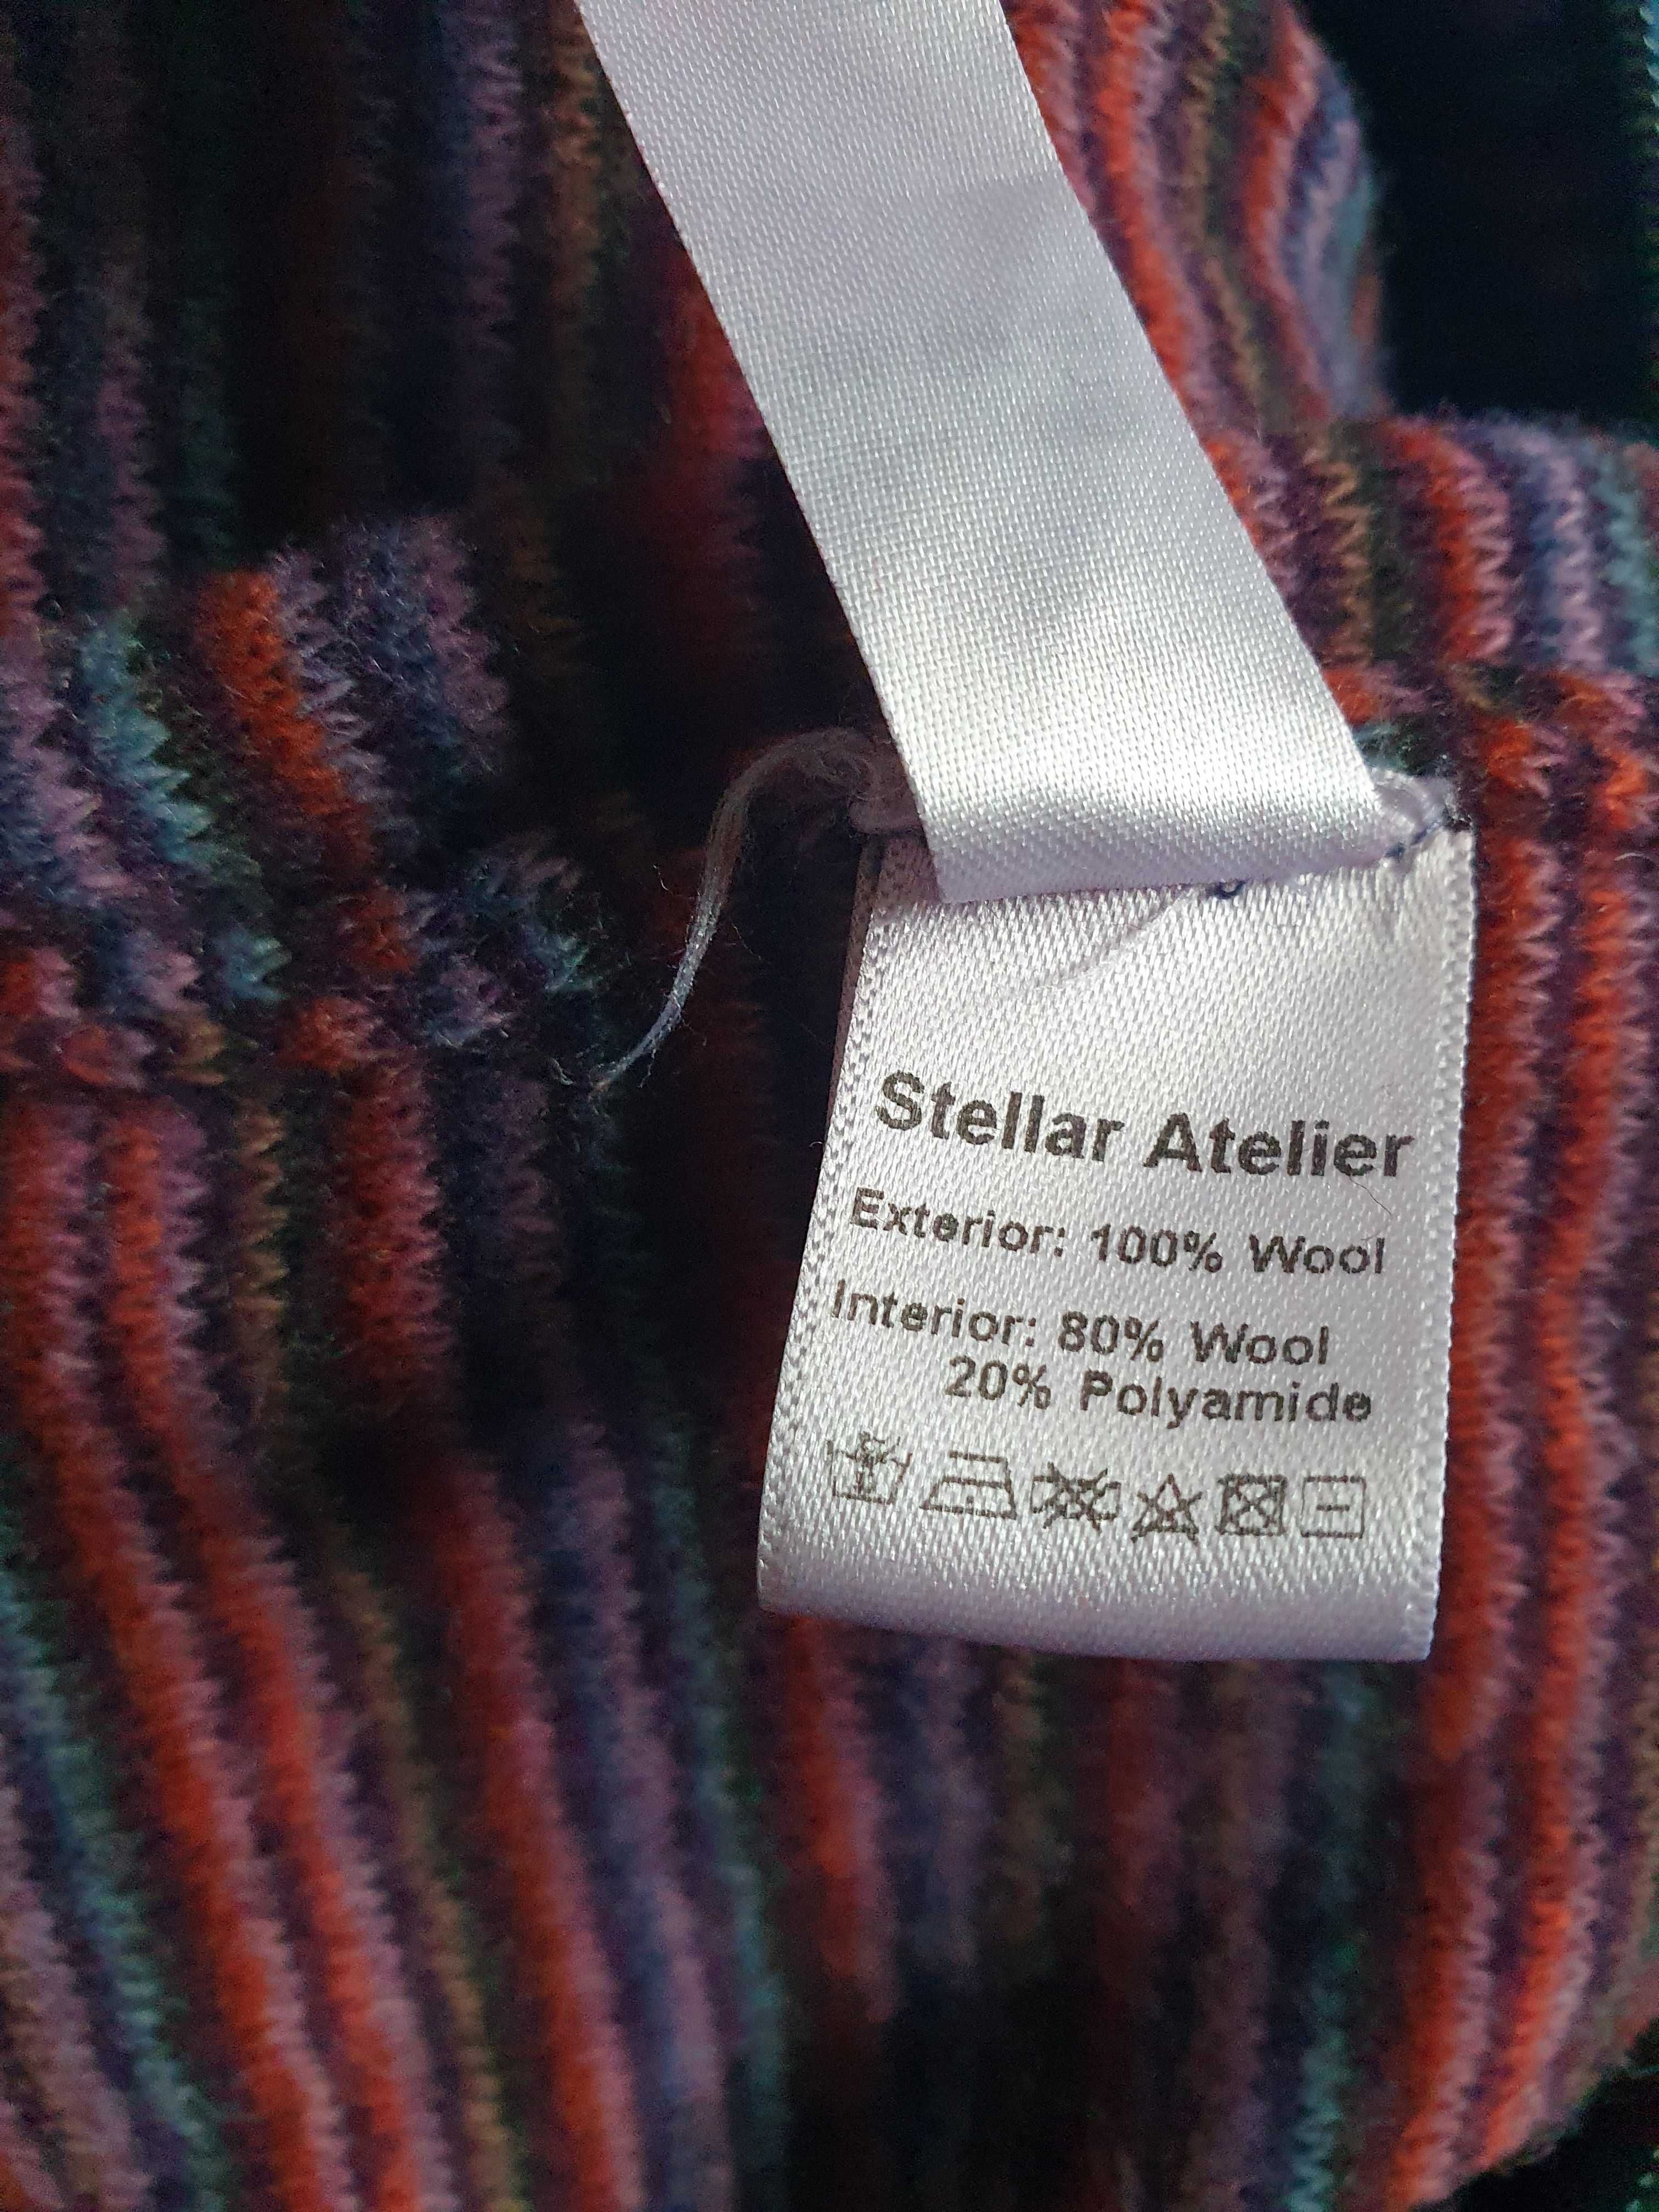 Salopeta dublata din lana fiarta, Bear Stellar Atelier 3-4 ani